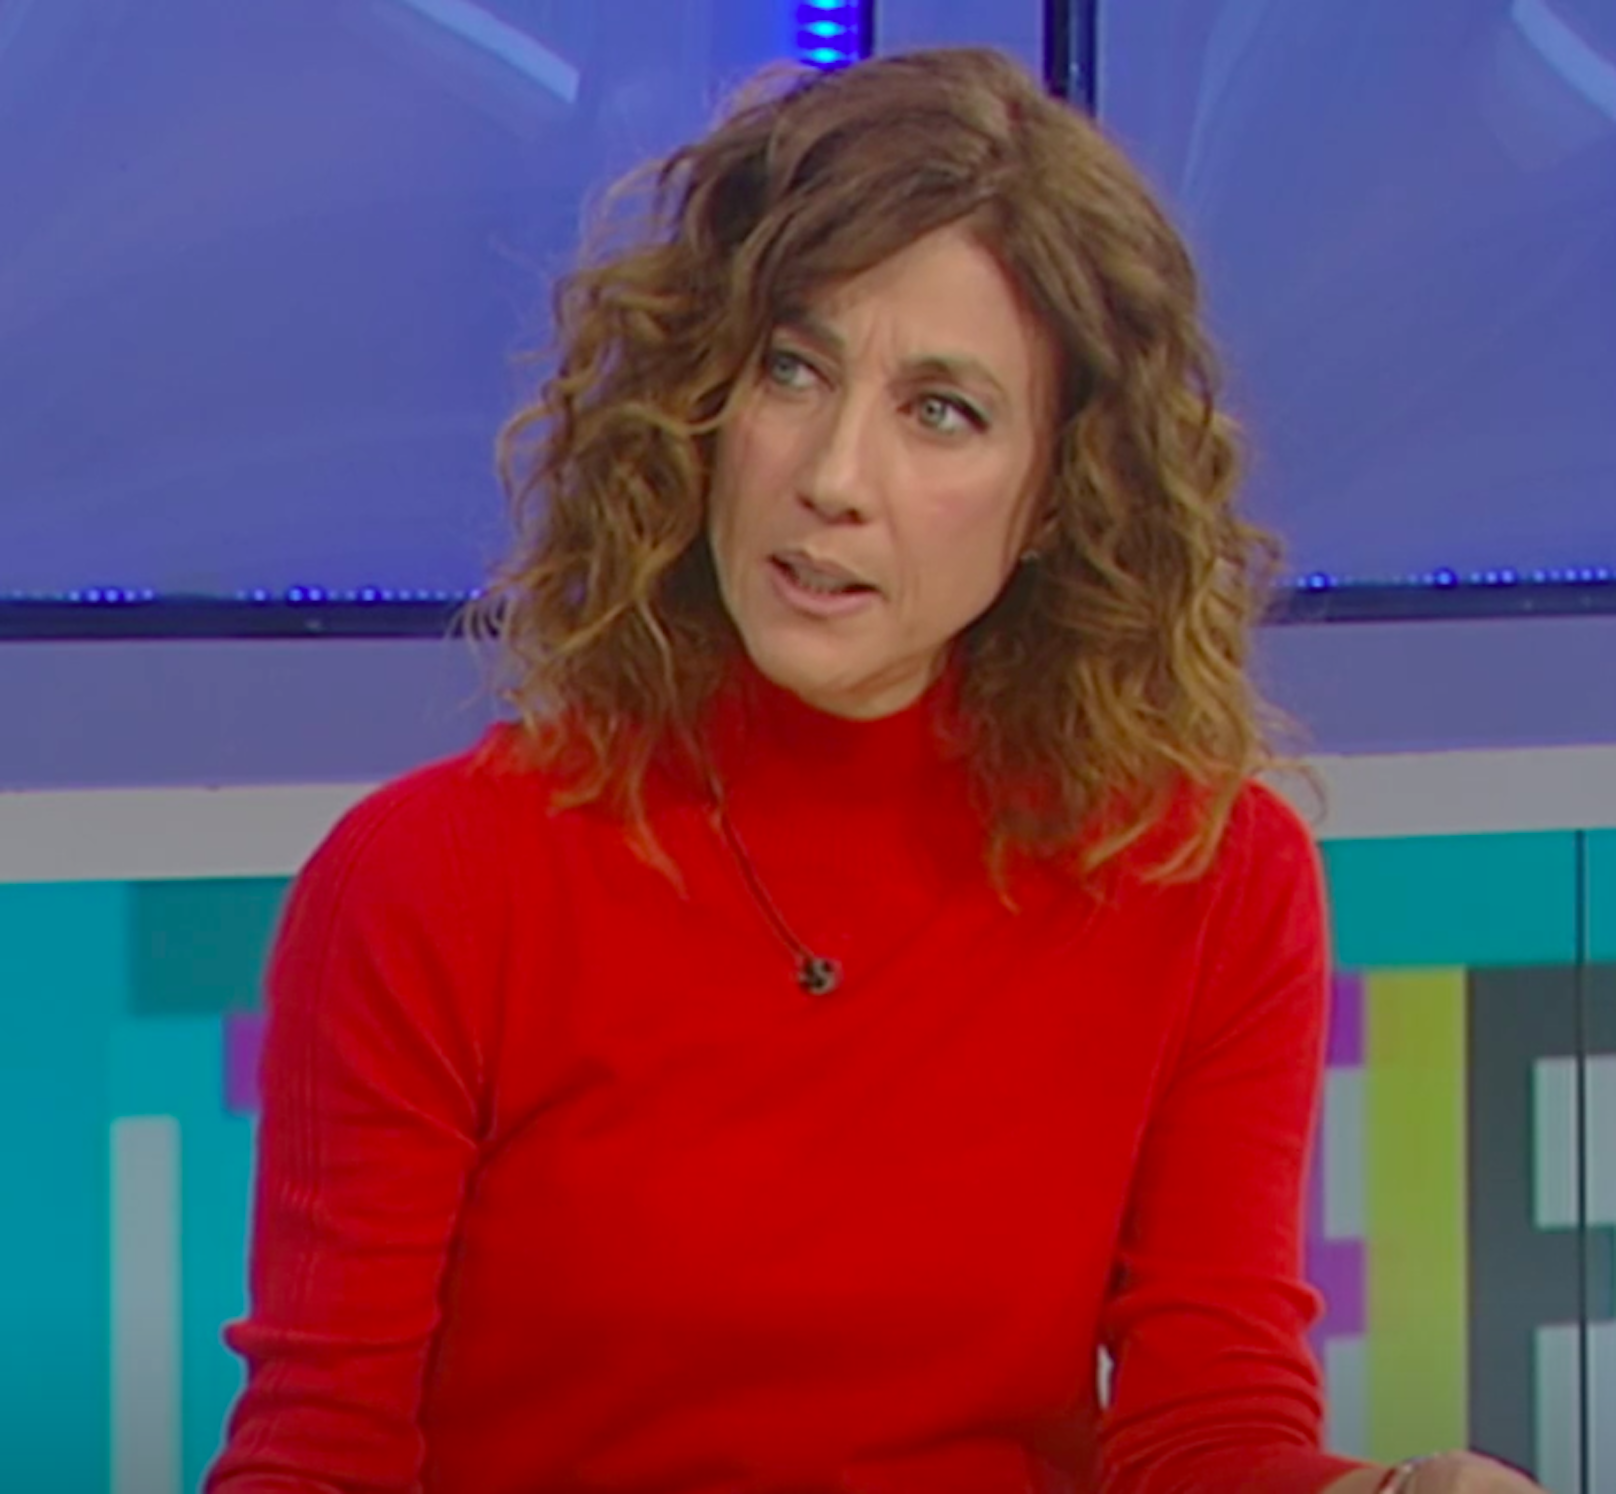 Desaparecida ex de TV3 vuelve emocionada a la tele hablando de su nueva vida